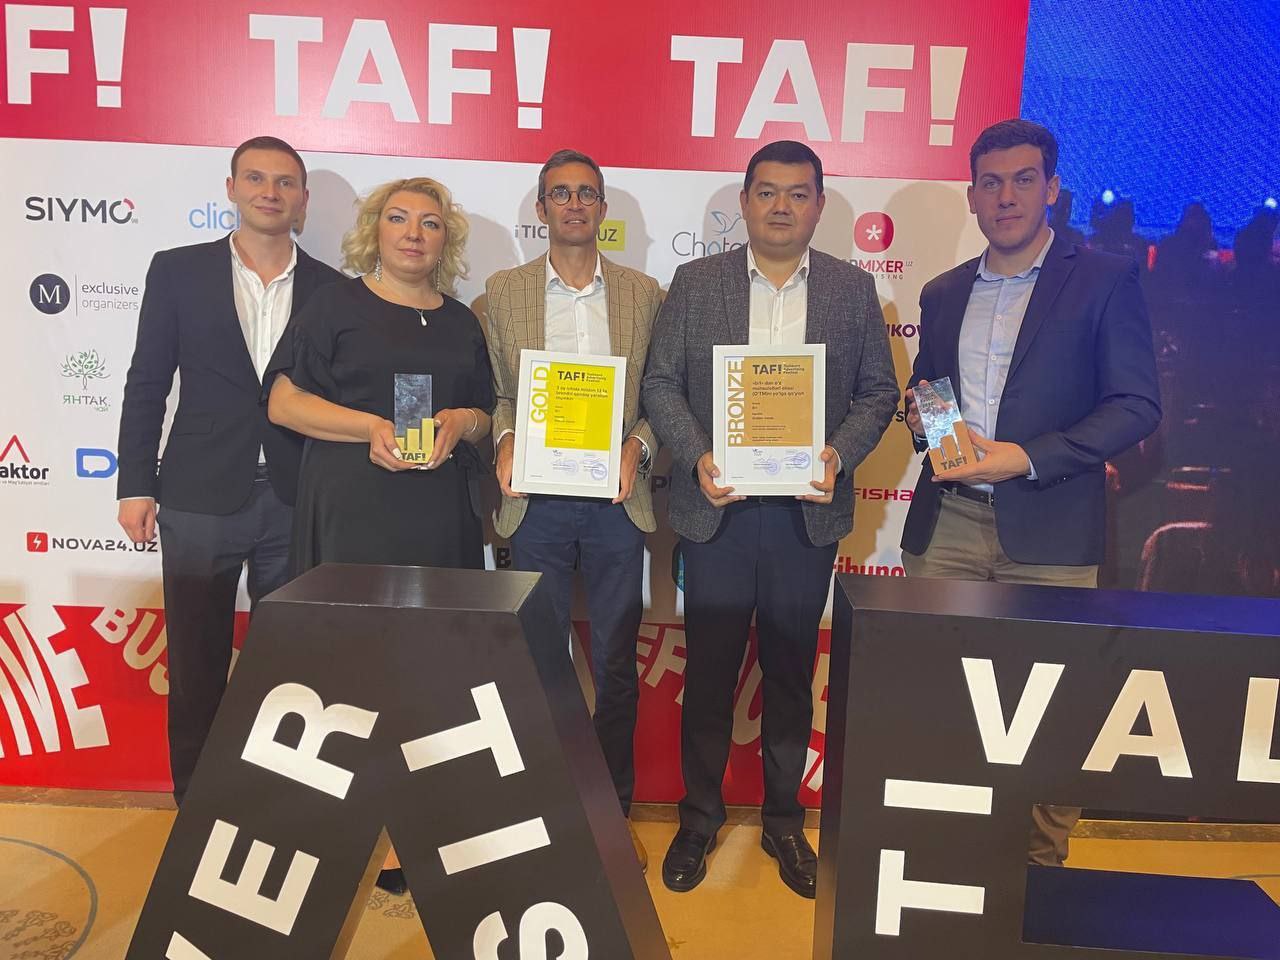 Французская сеть магазинов bi1 в Ташкенте завоевала сразу 3 награды на TAF! 22 в первый год после запуска сети